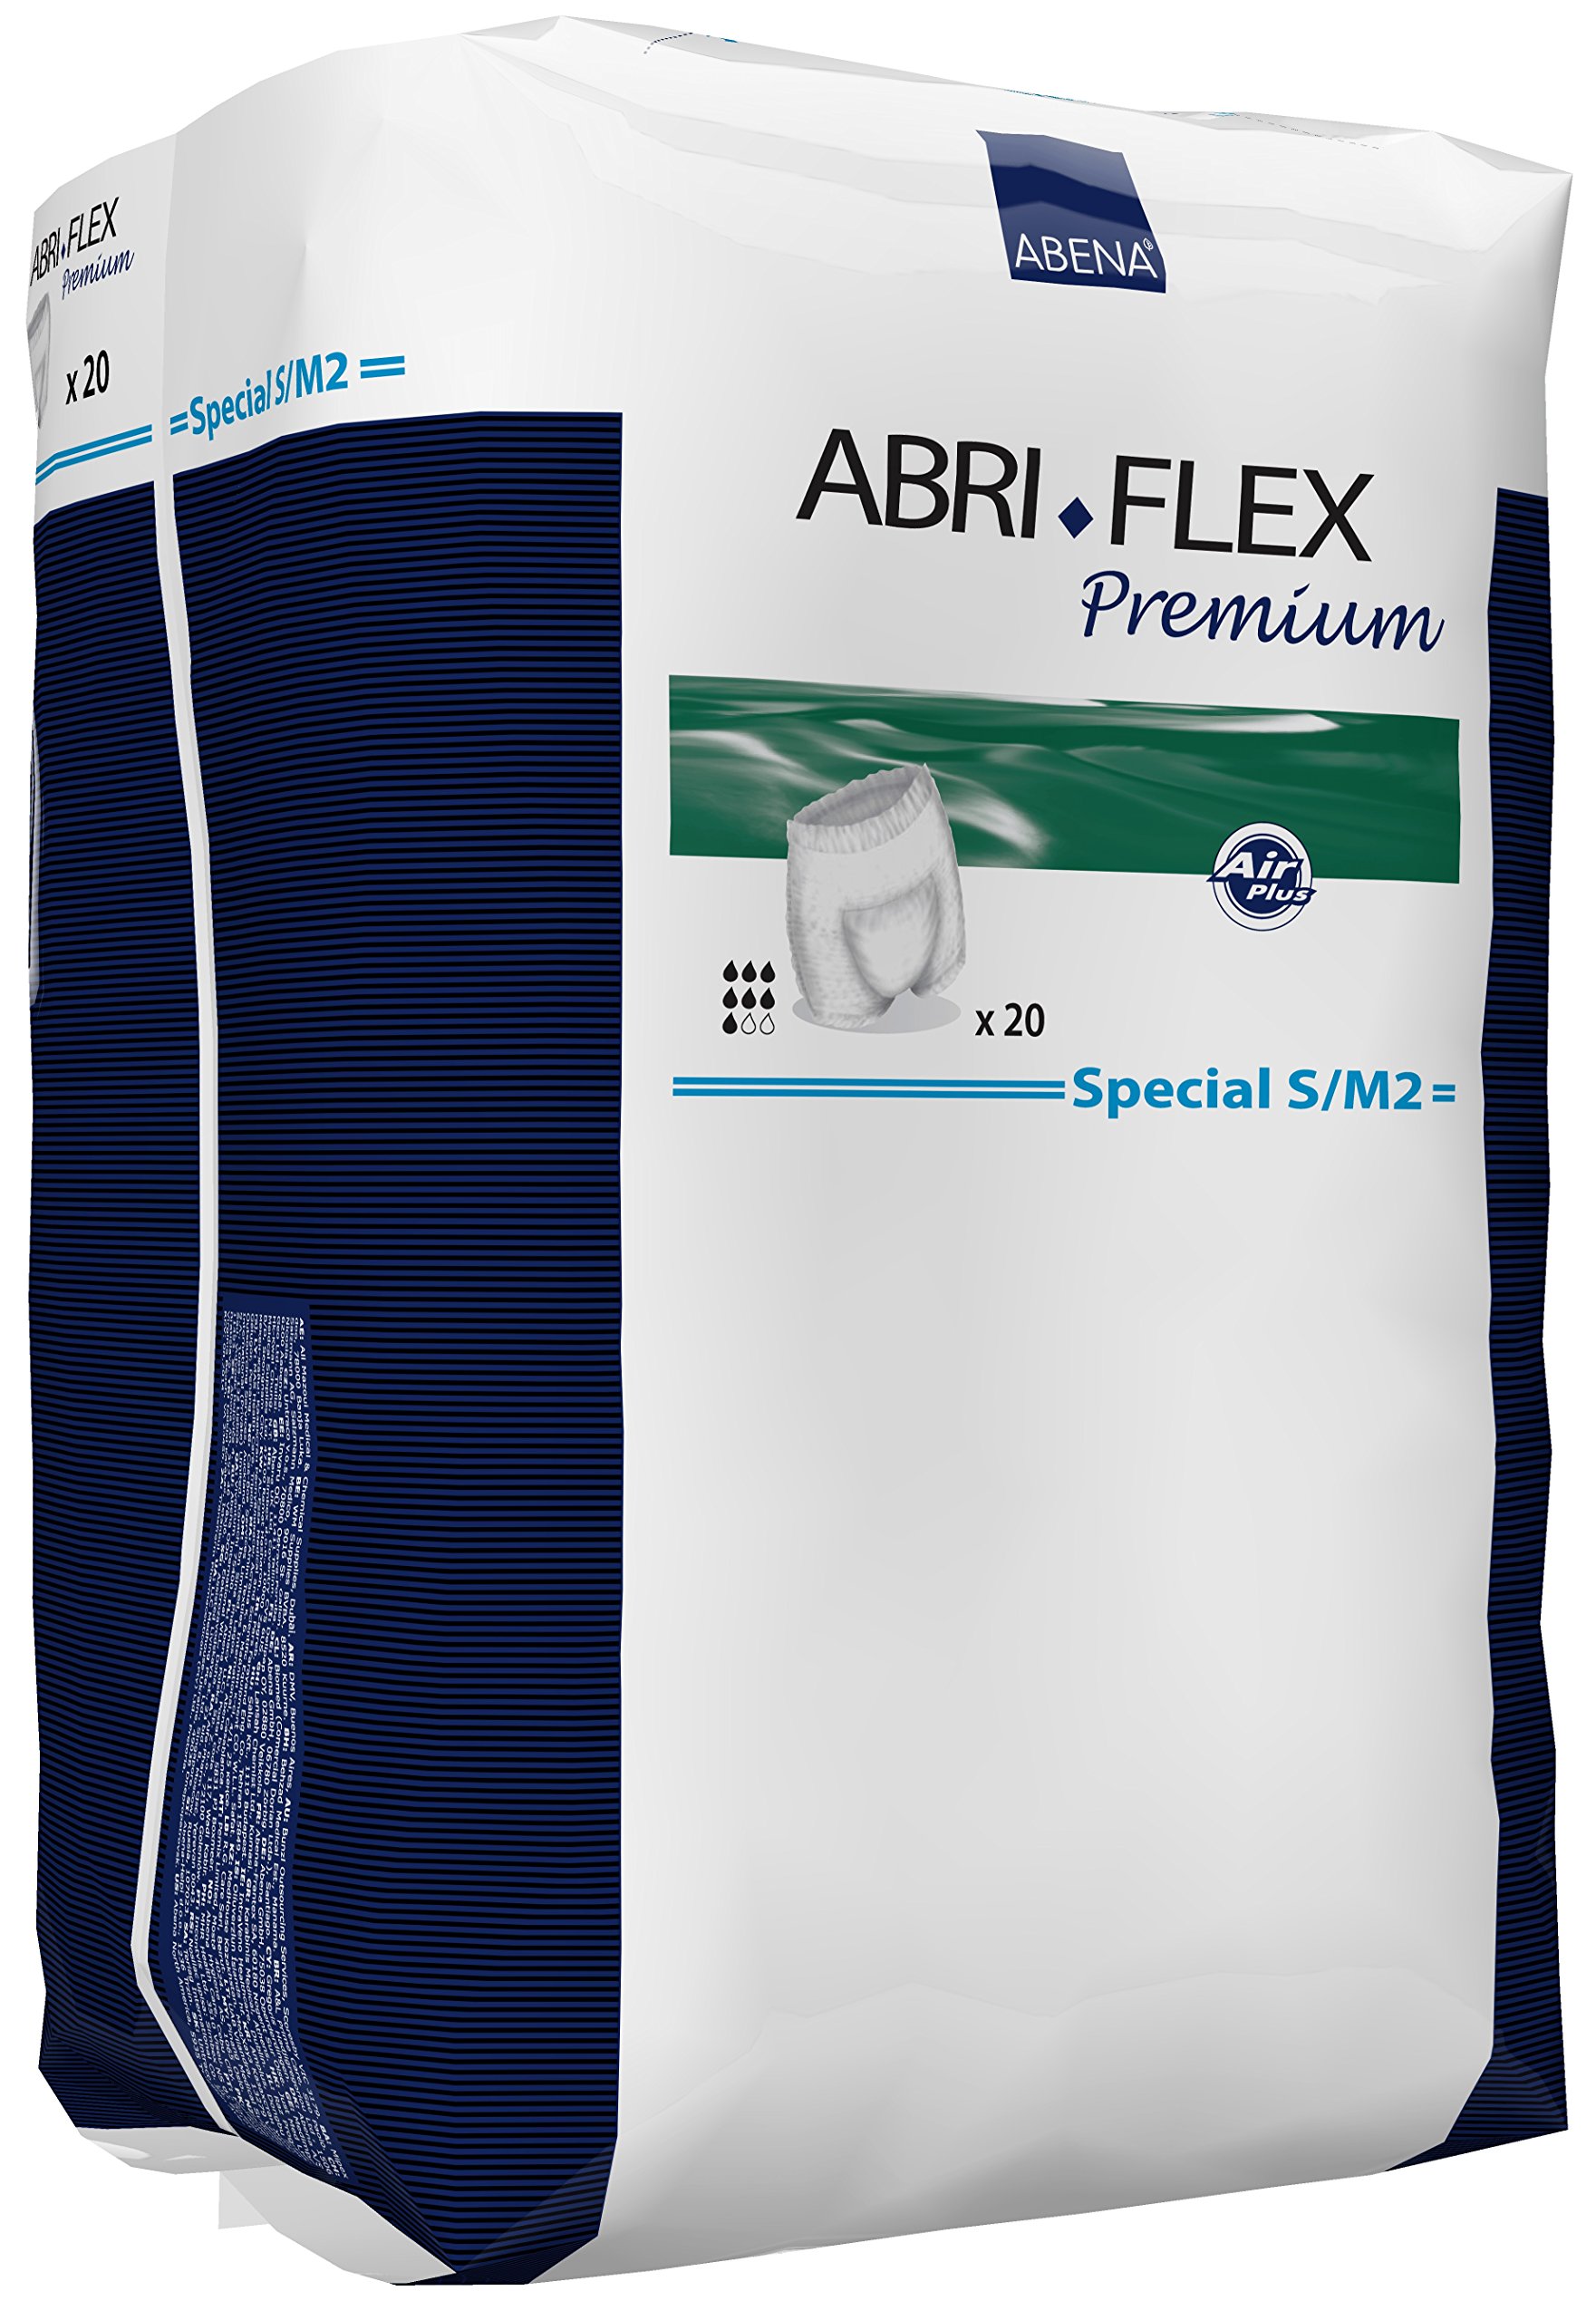 ABRI FLEX Special S/M 2 60–110 cm/Taille Größe, Pull Up, 1700 ml